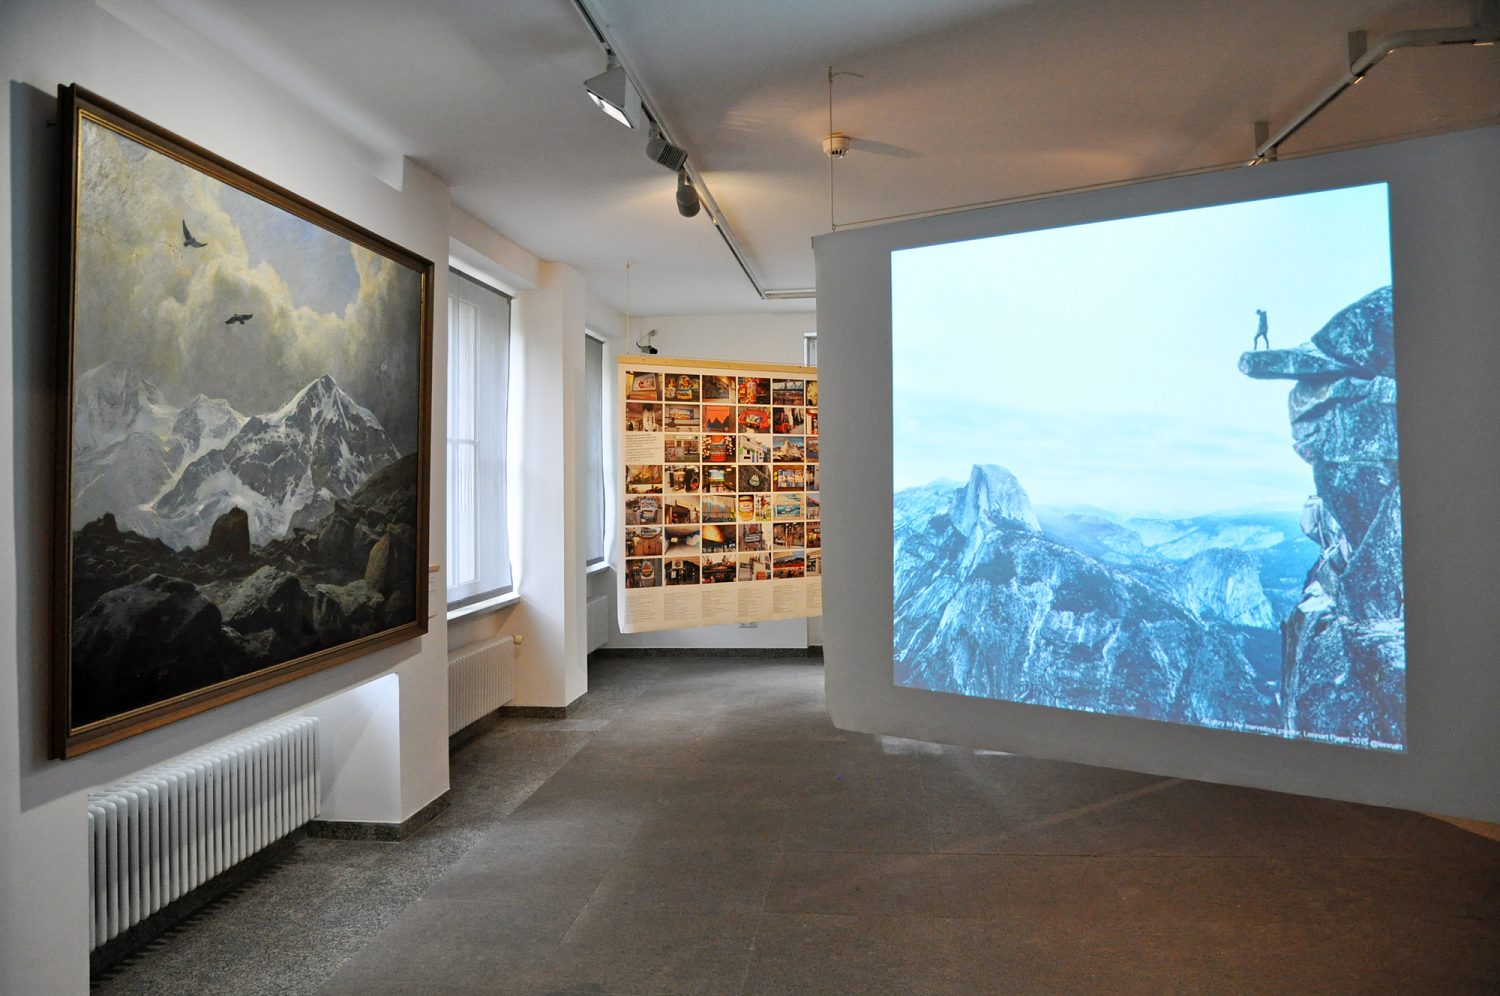 Eva Plass: <strong>Alpines Museum Sonderausstellung 150 Jahre DAV – Die Berge und wir</strong><br> – Ausstellungsgestaltung / München 2019